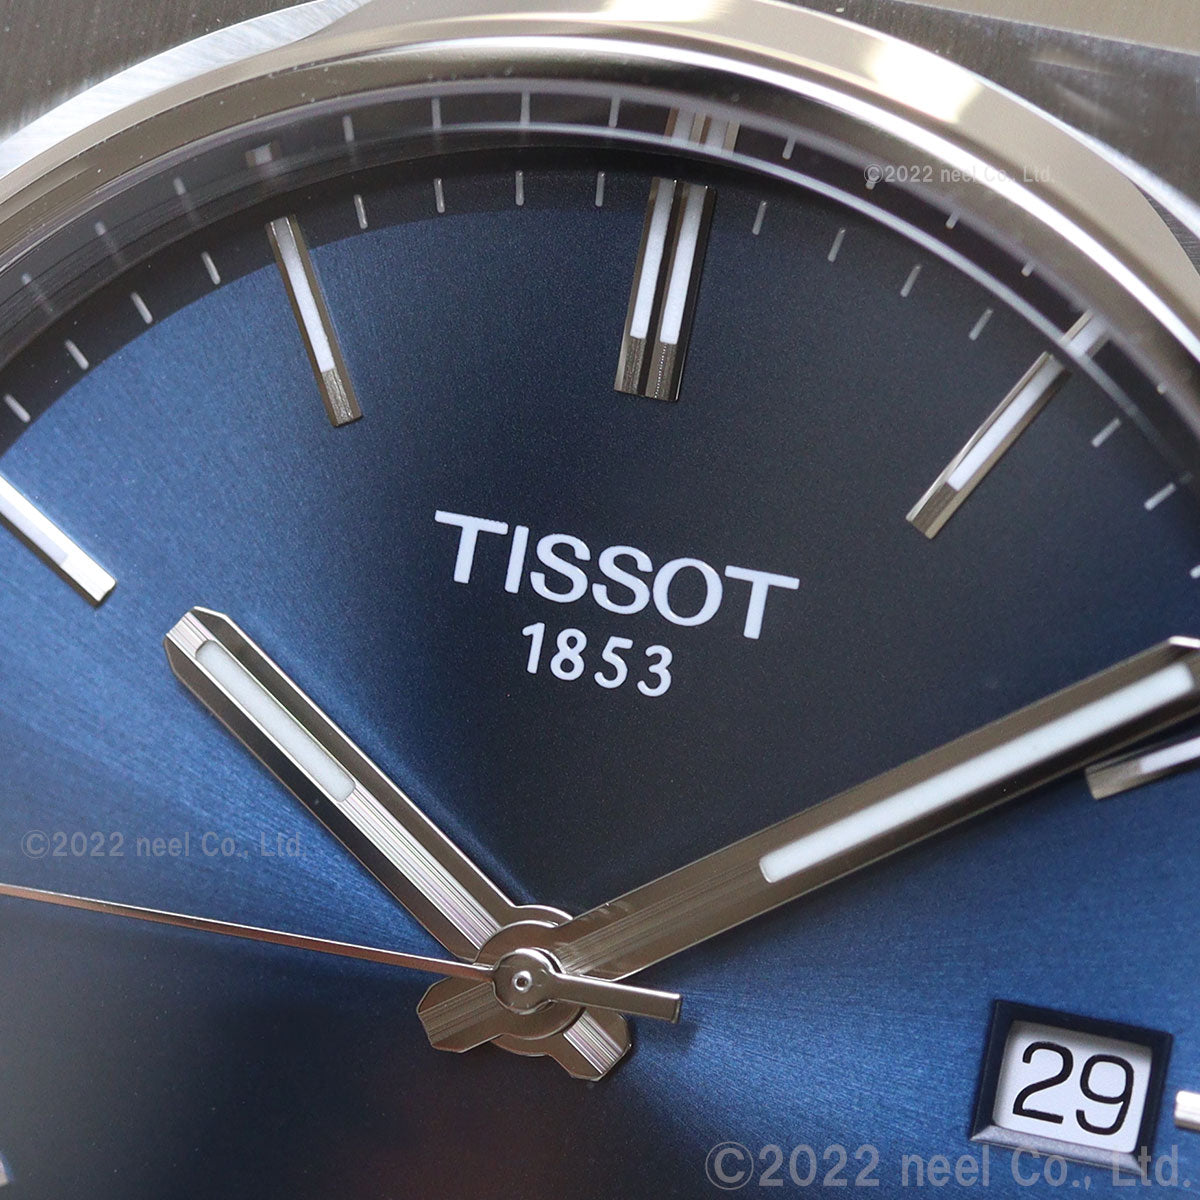 ティソ TISSOT 腕時計 メンズ PRX ピーアールエックス T137.410.16.041.00